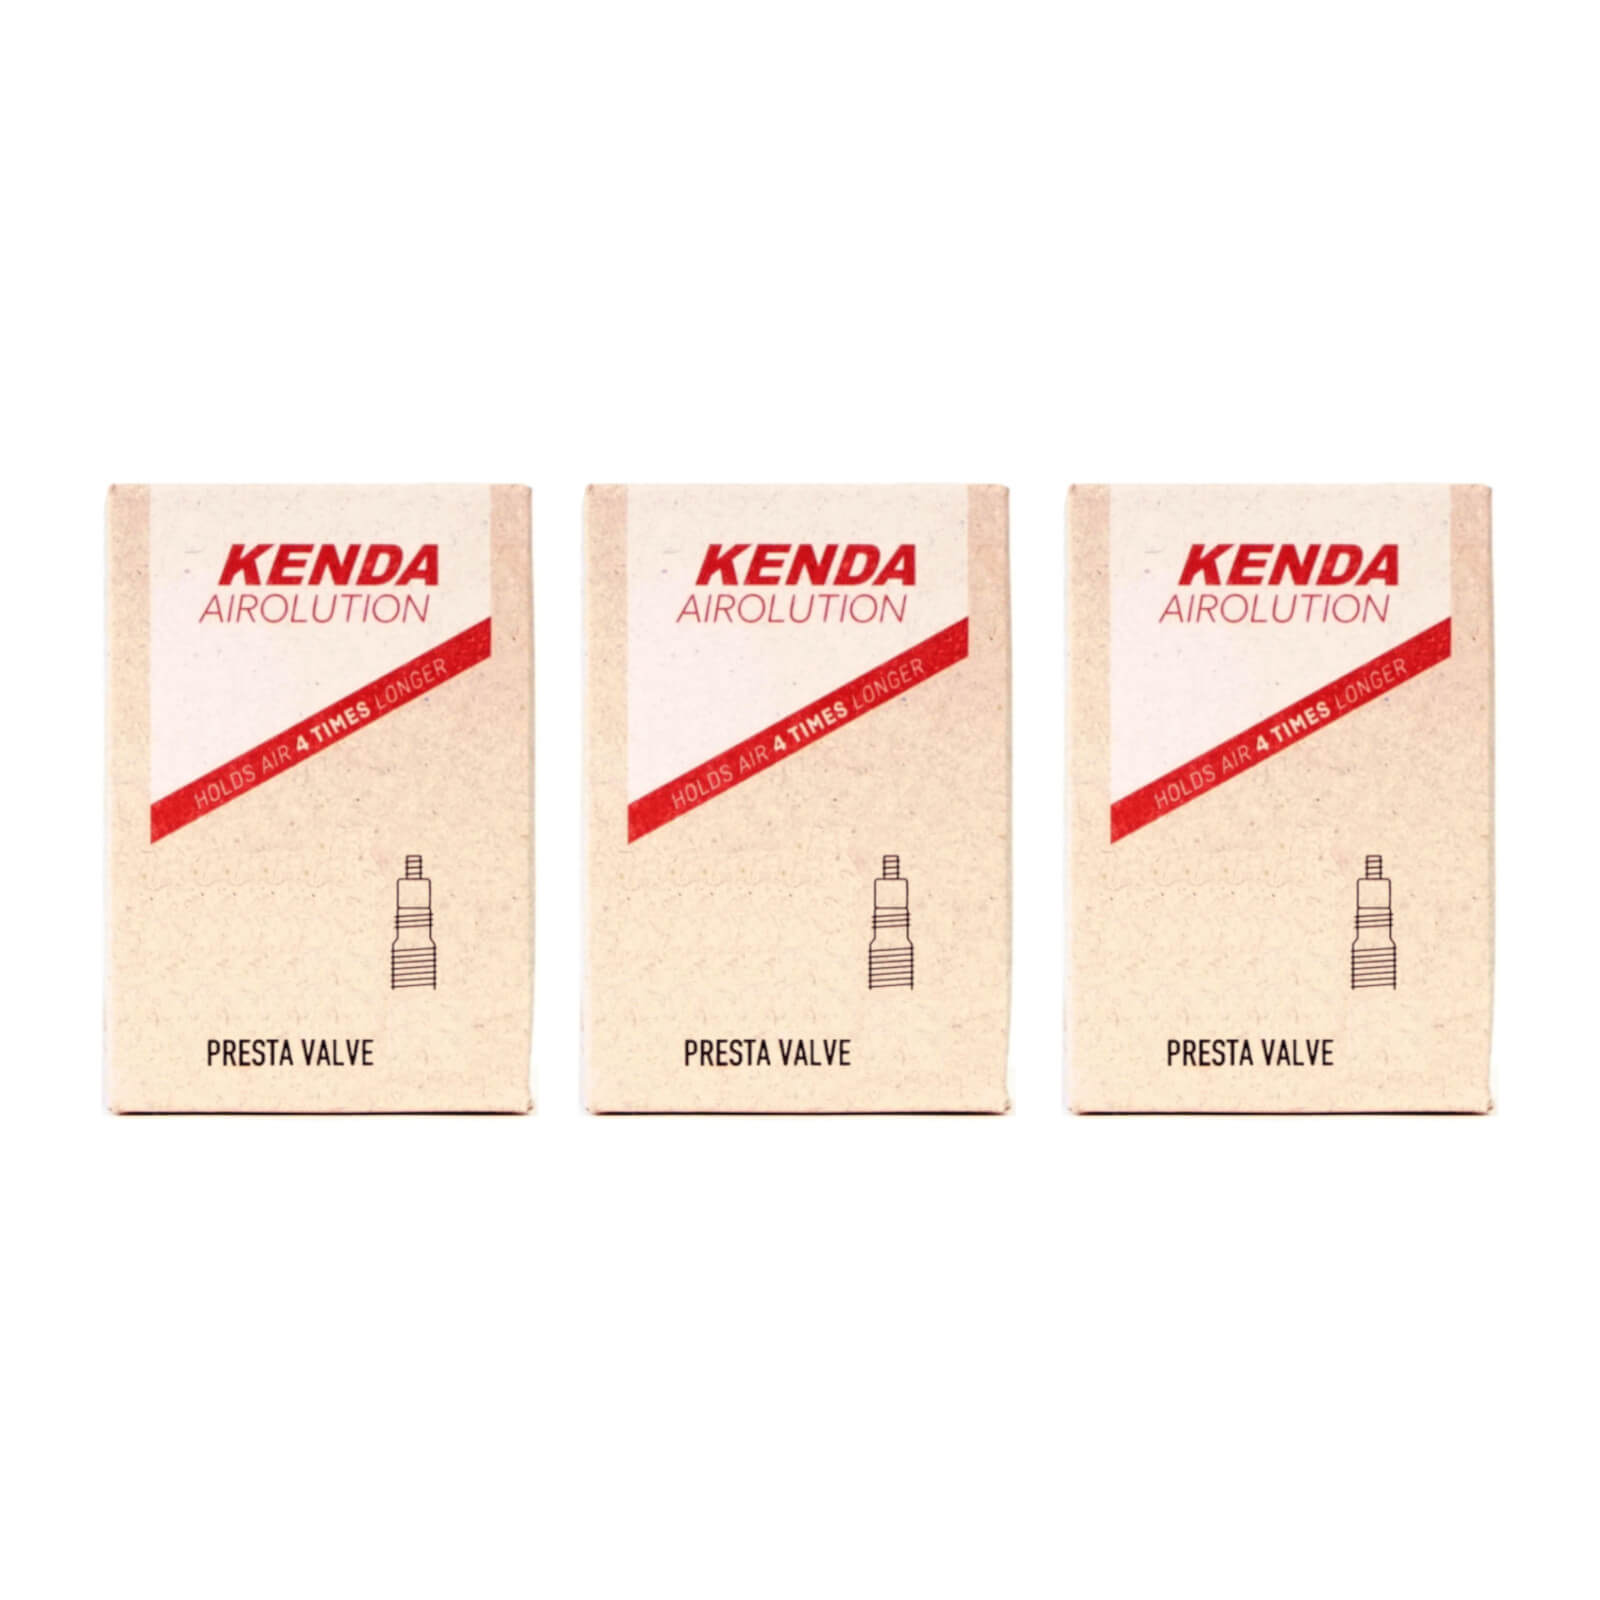 Kenda Airolution 26x2.0-2.4" 26 Inch Presta Valve Bike Inner Tube Pack of 3